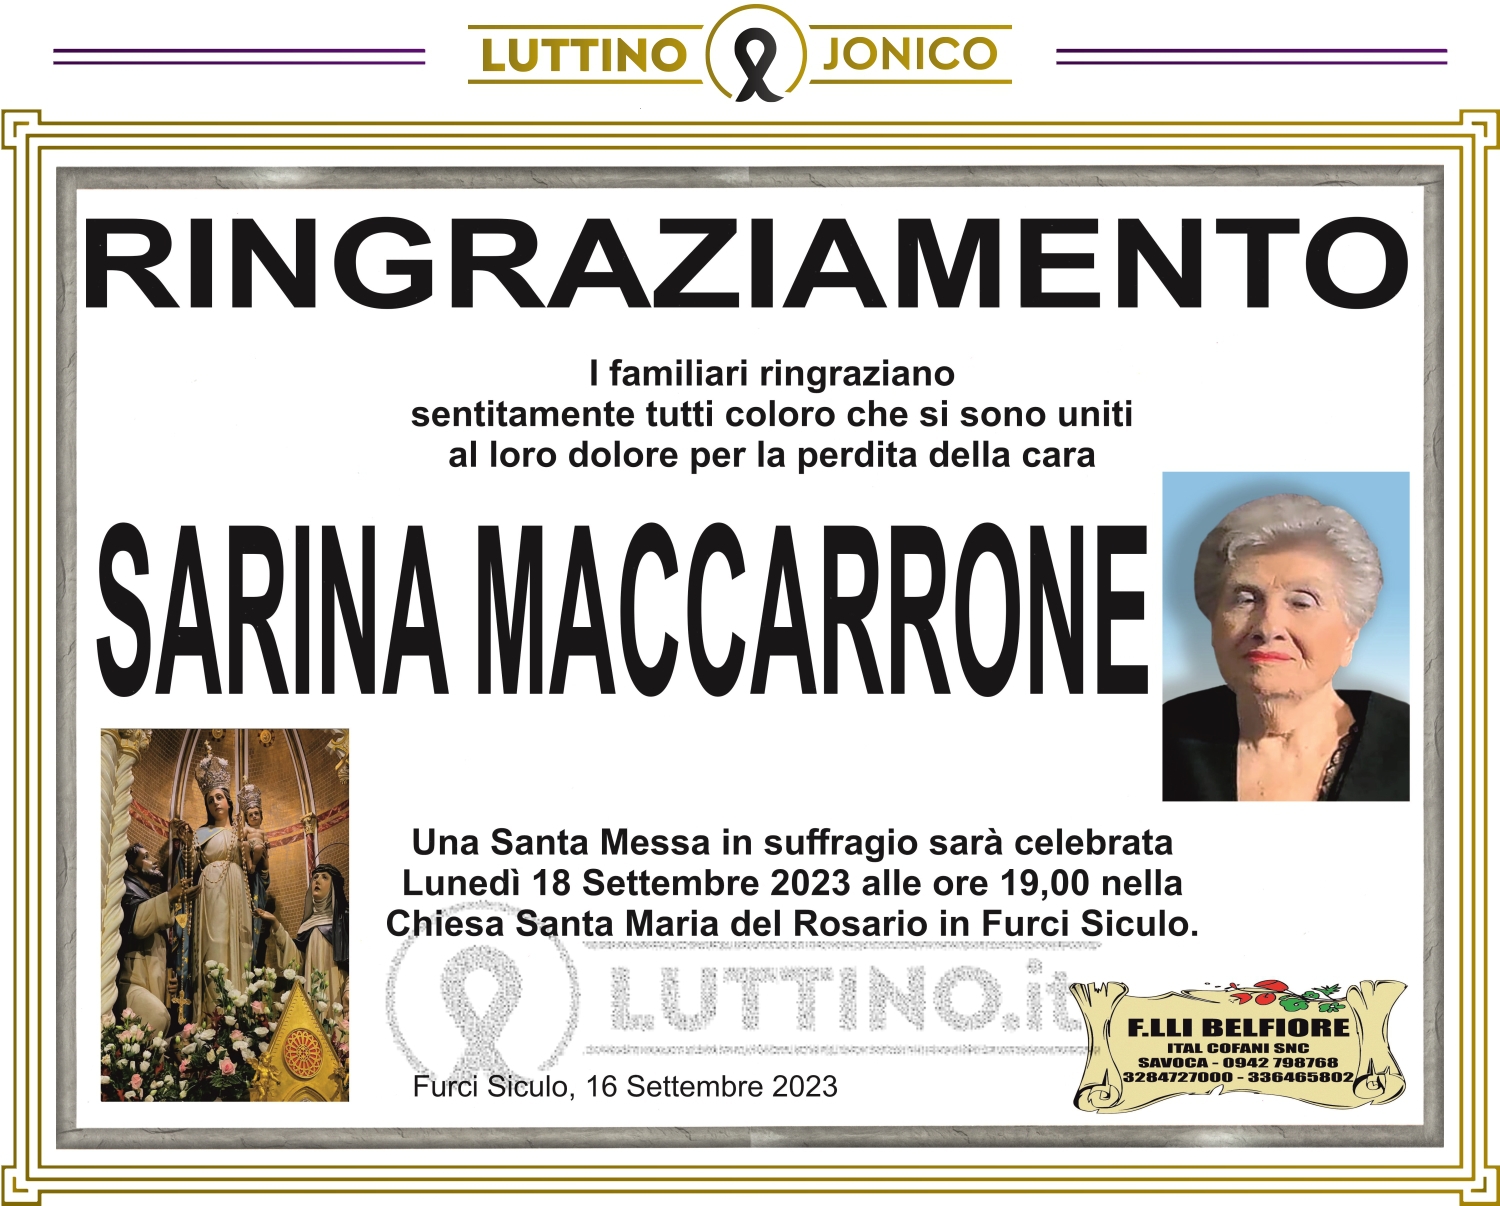 Sarina Maccarrone